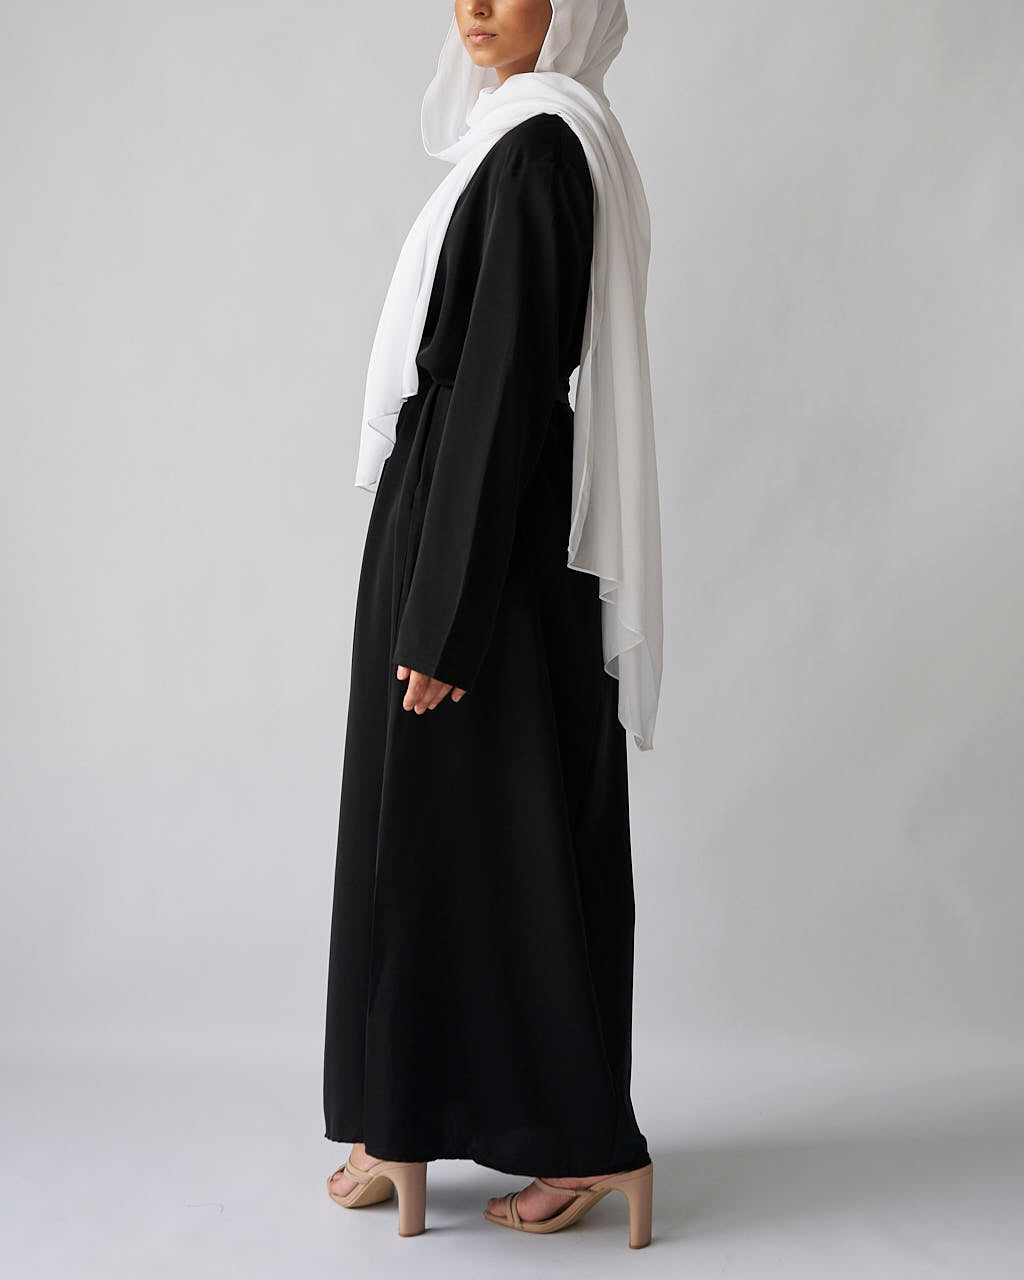 Essential Abaya - Black - Essential Abaya - Fajr Noor